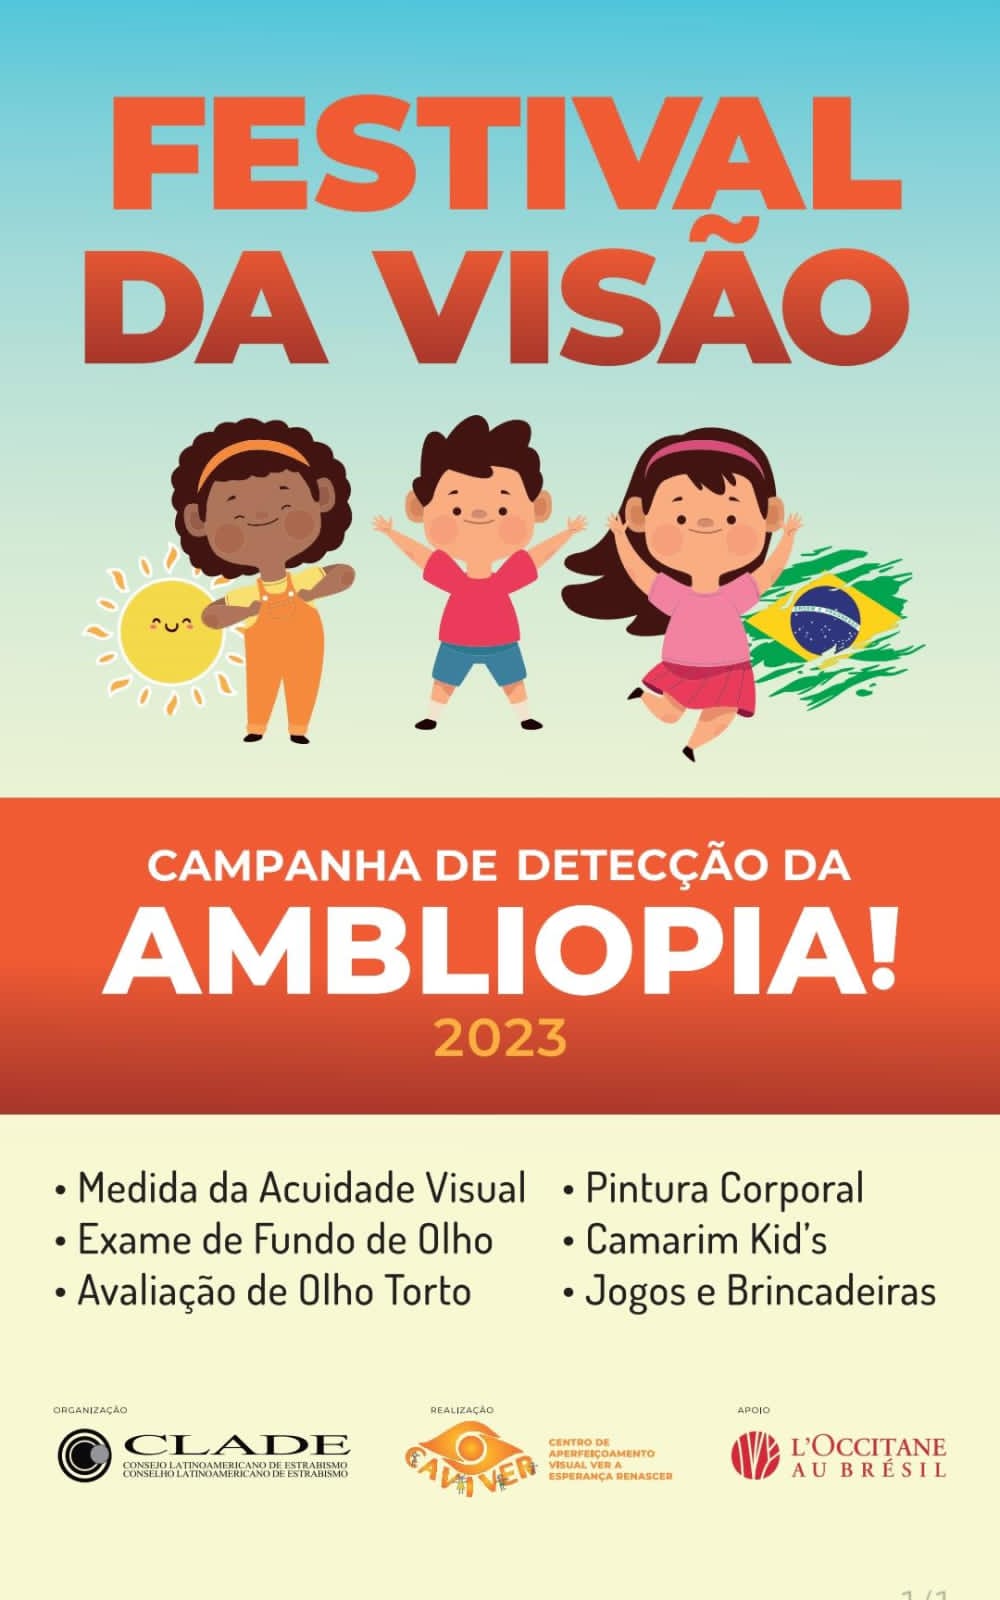 PARTE 2: Mais 29 jogos brasileiros pra ficar de olho em 2023